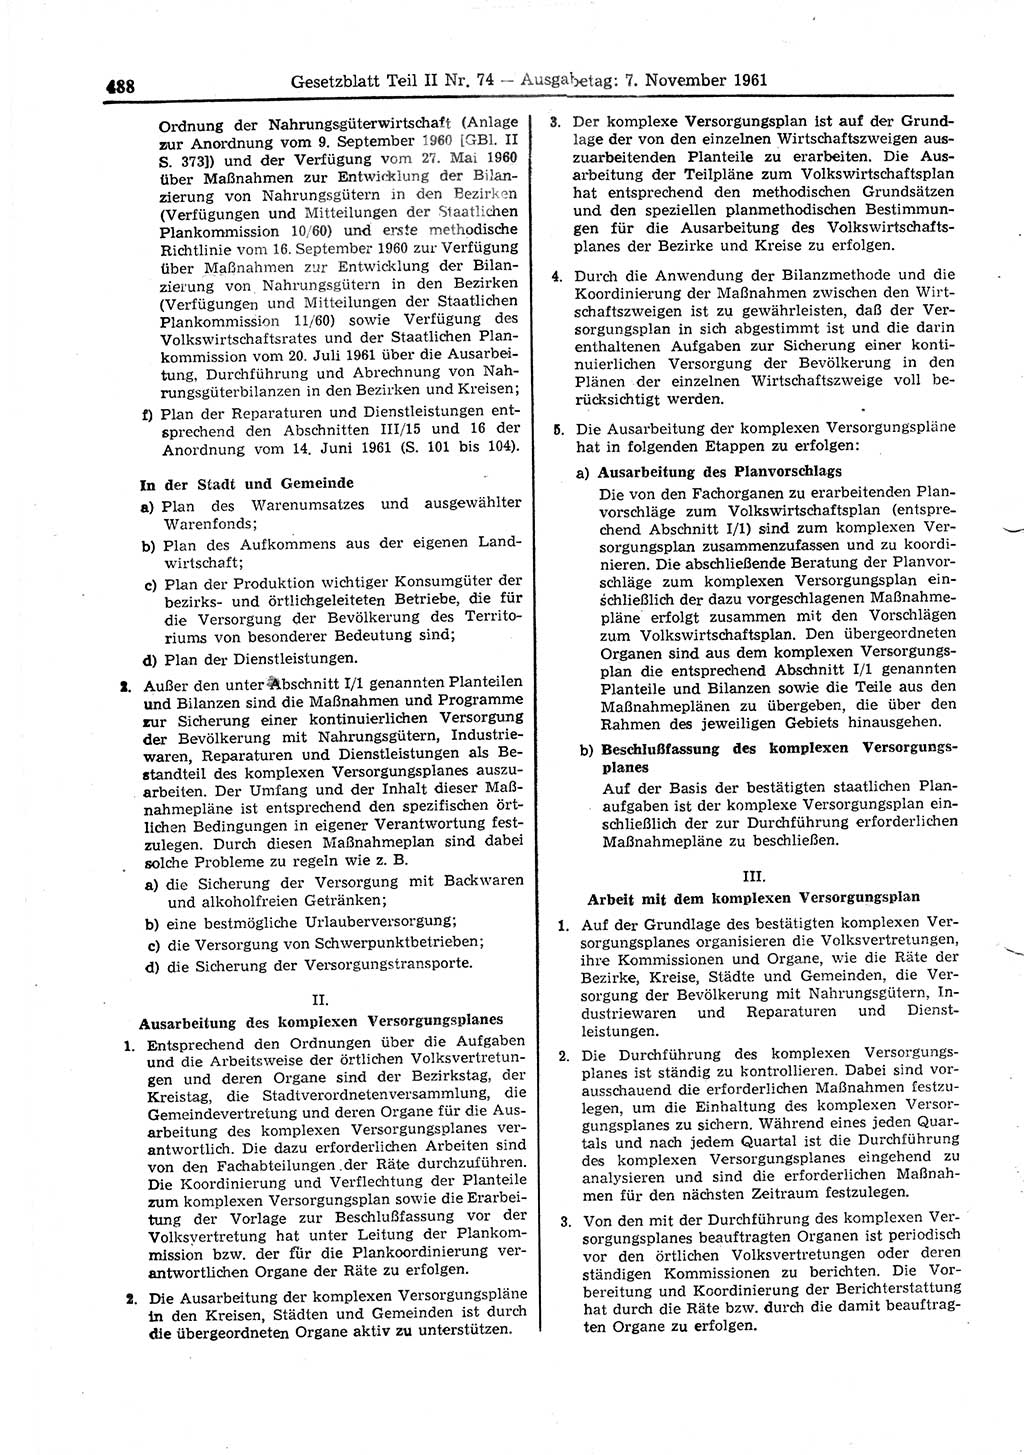 Gesetzblatt (GBl.) der Deutschen Demokratischen Republik (DDR) Teil ⅠⅠ 1961, Seite 488 (GBl. DDR ⅠⅠ 1961, S. 488)